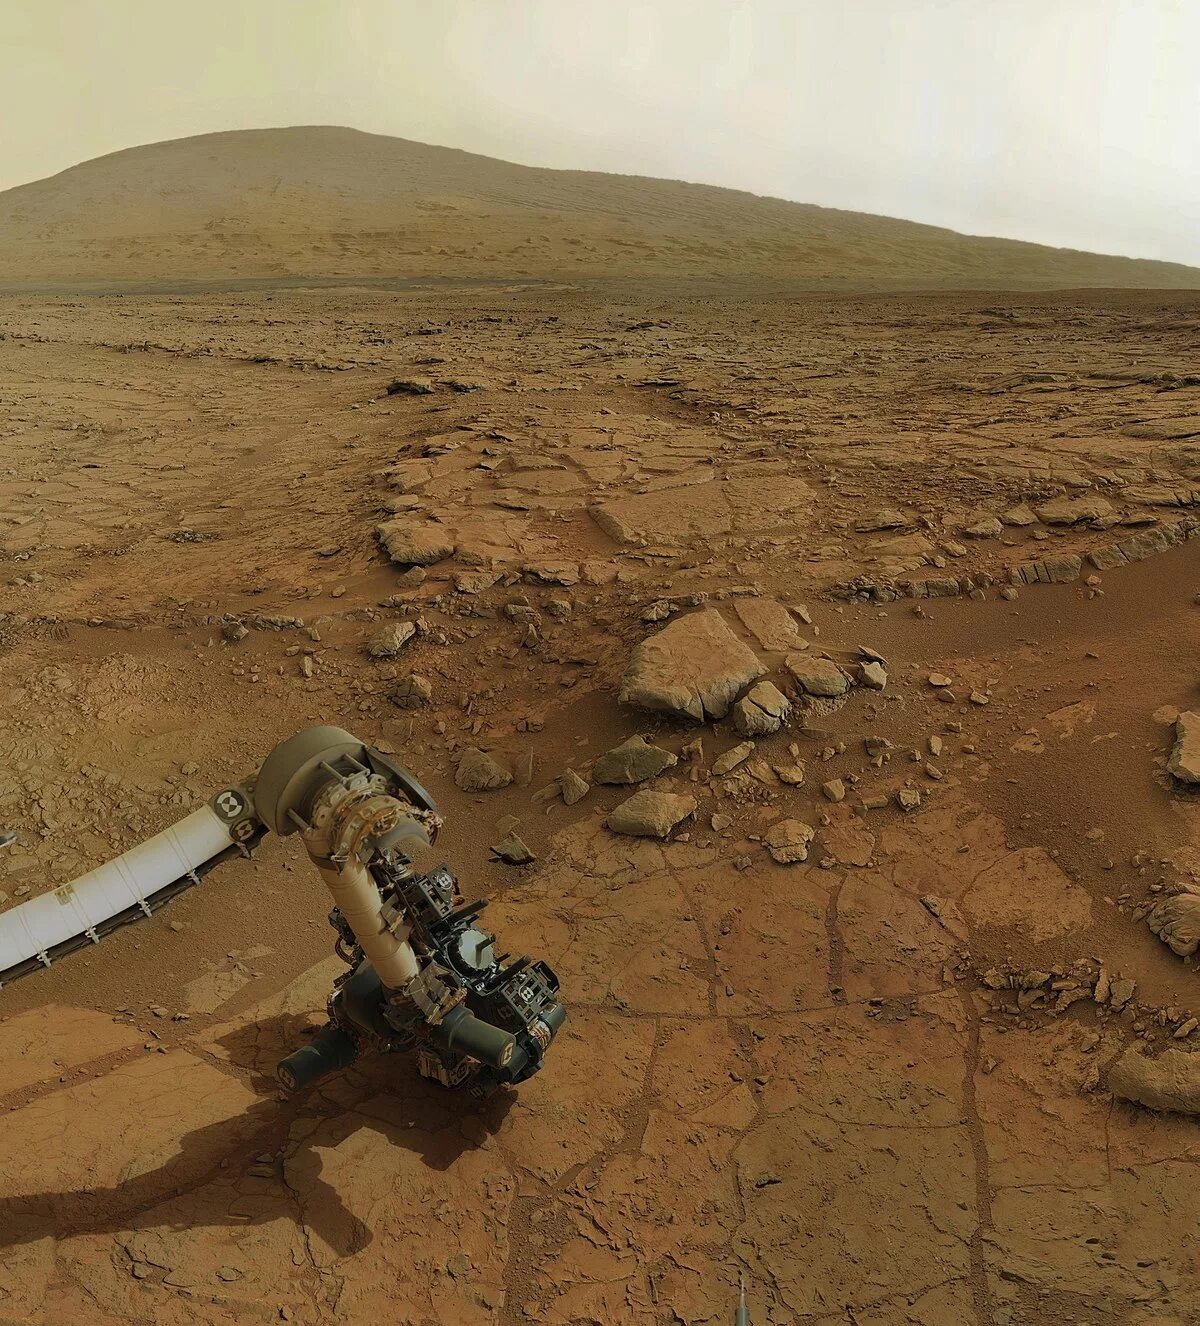 Марс пригоден для жизни. Марсоход на Марсе. Снимки Марса с марсохода Curiosity. Фото Марса с марсохода Curiosity 2014. Марс фото с марсохода.